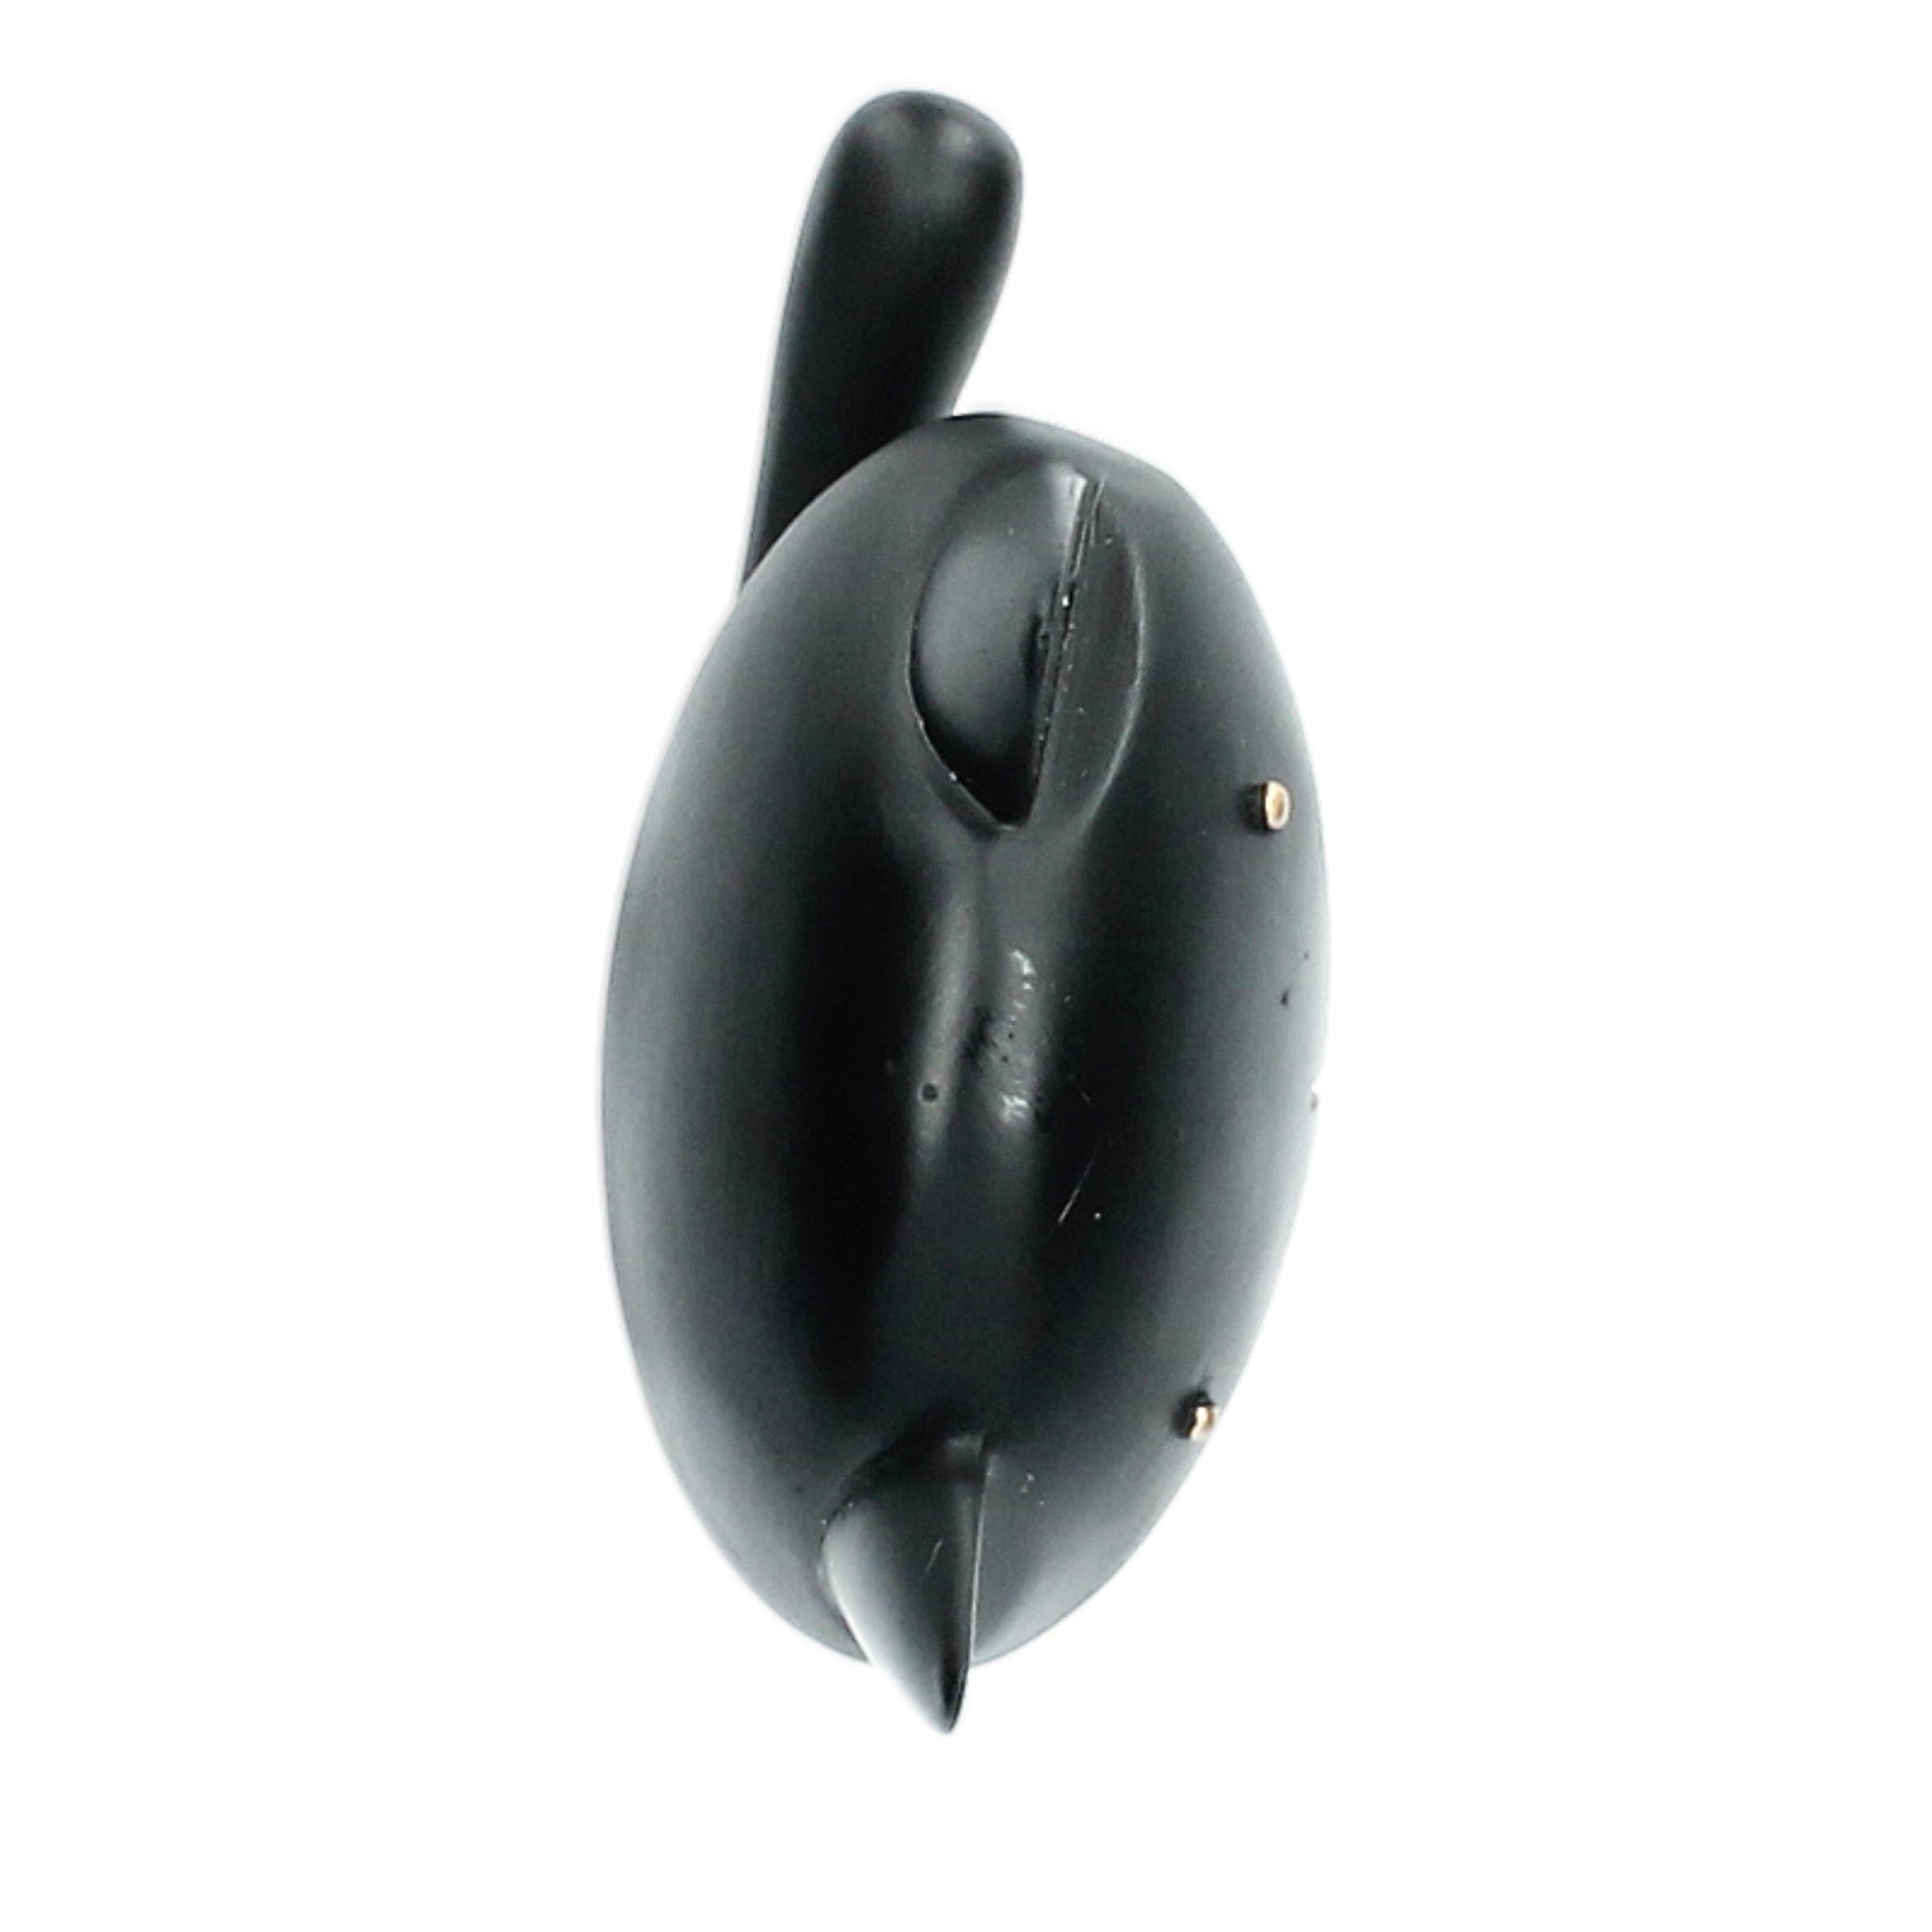 Statua di un piccolo gatto nero con anelli - Decorazione